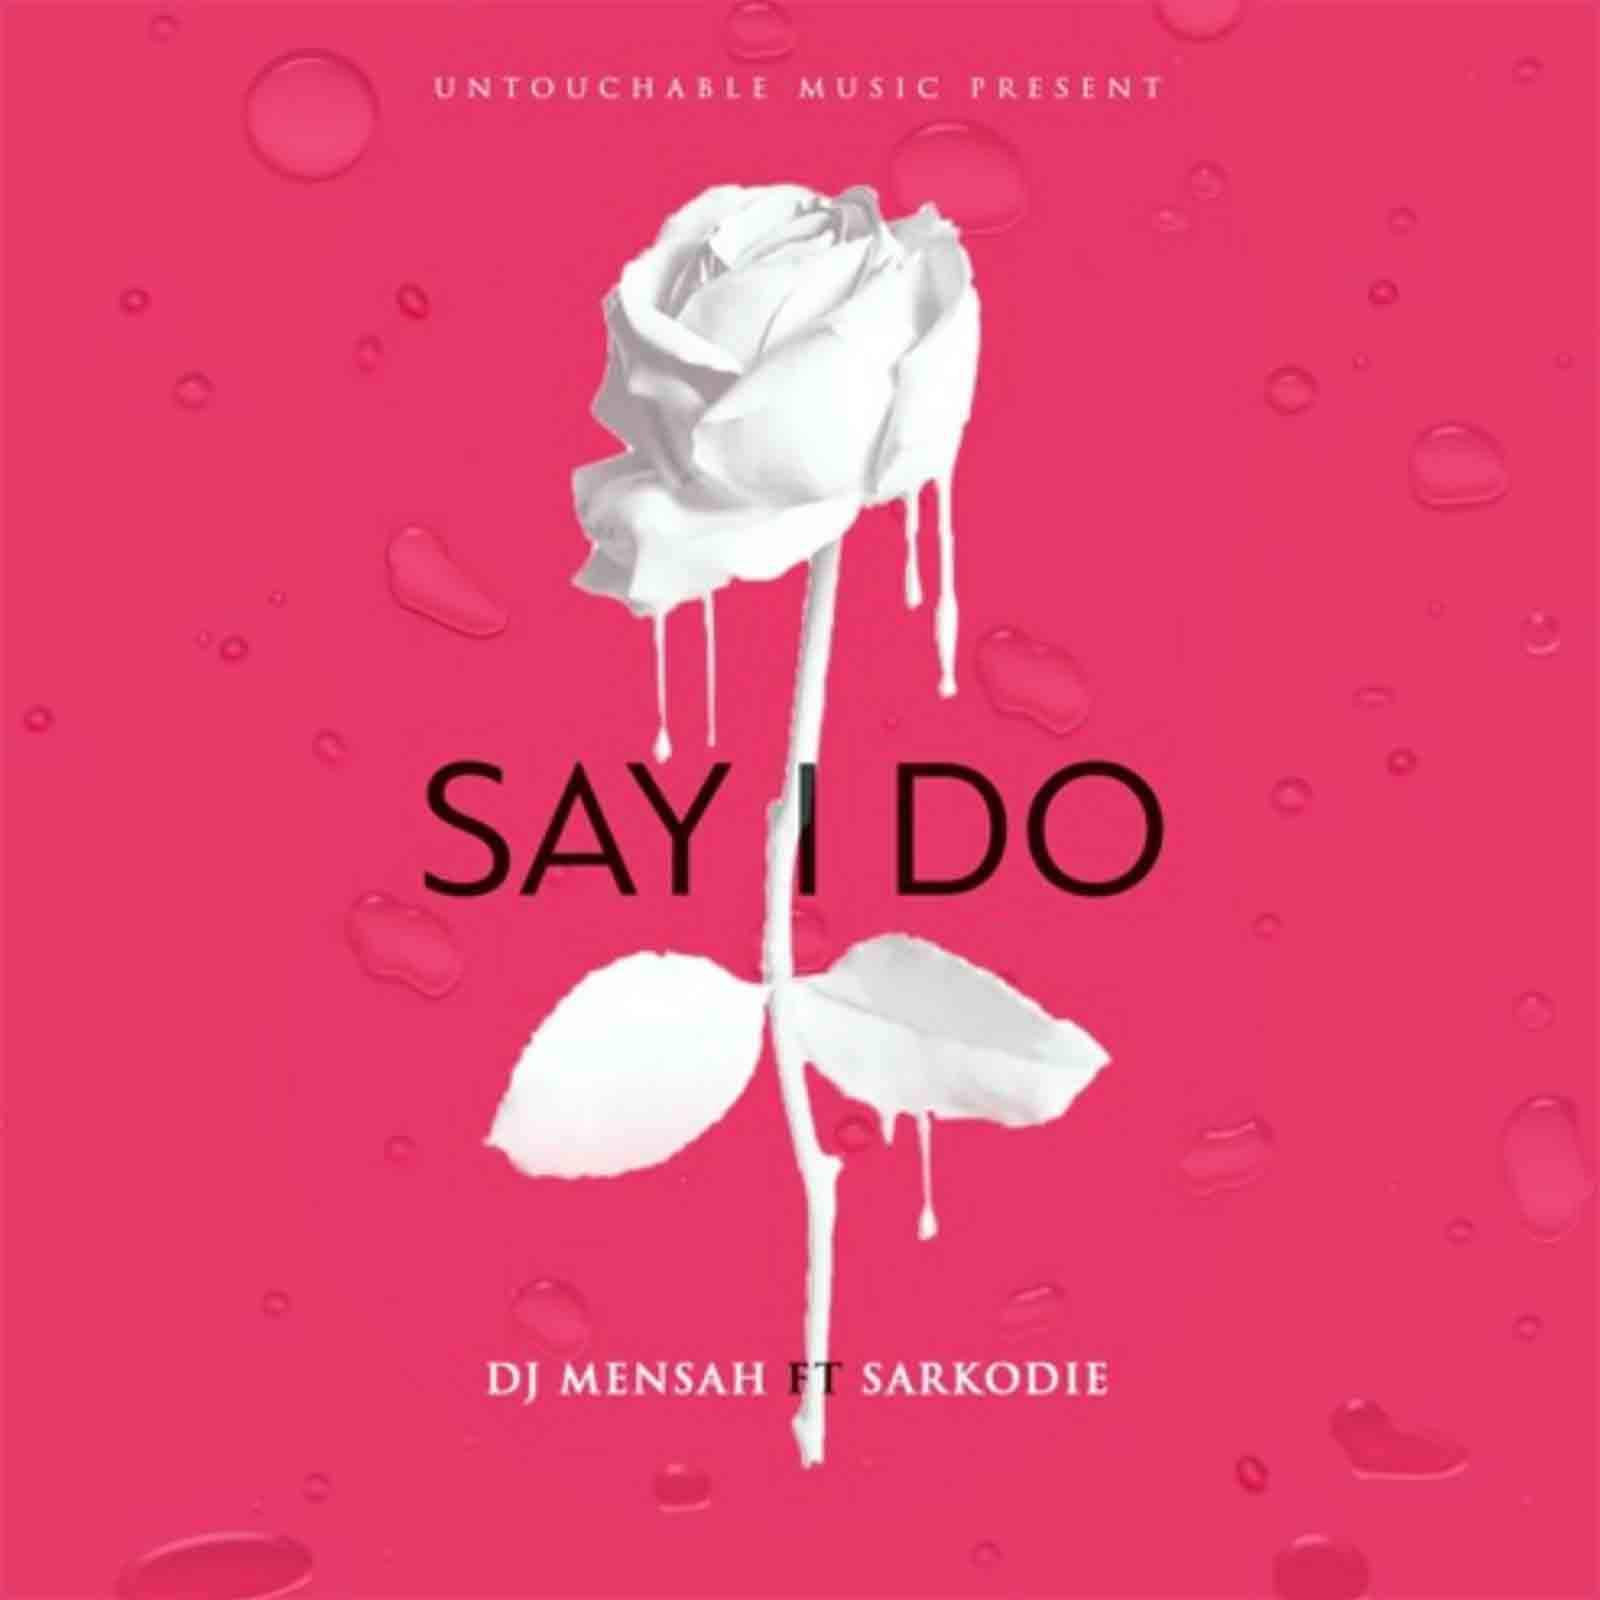 Say I Do by DJ Mensah feat. Sarkodie